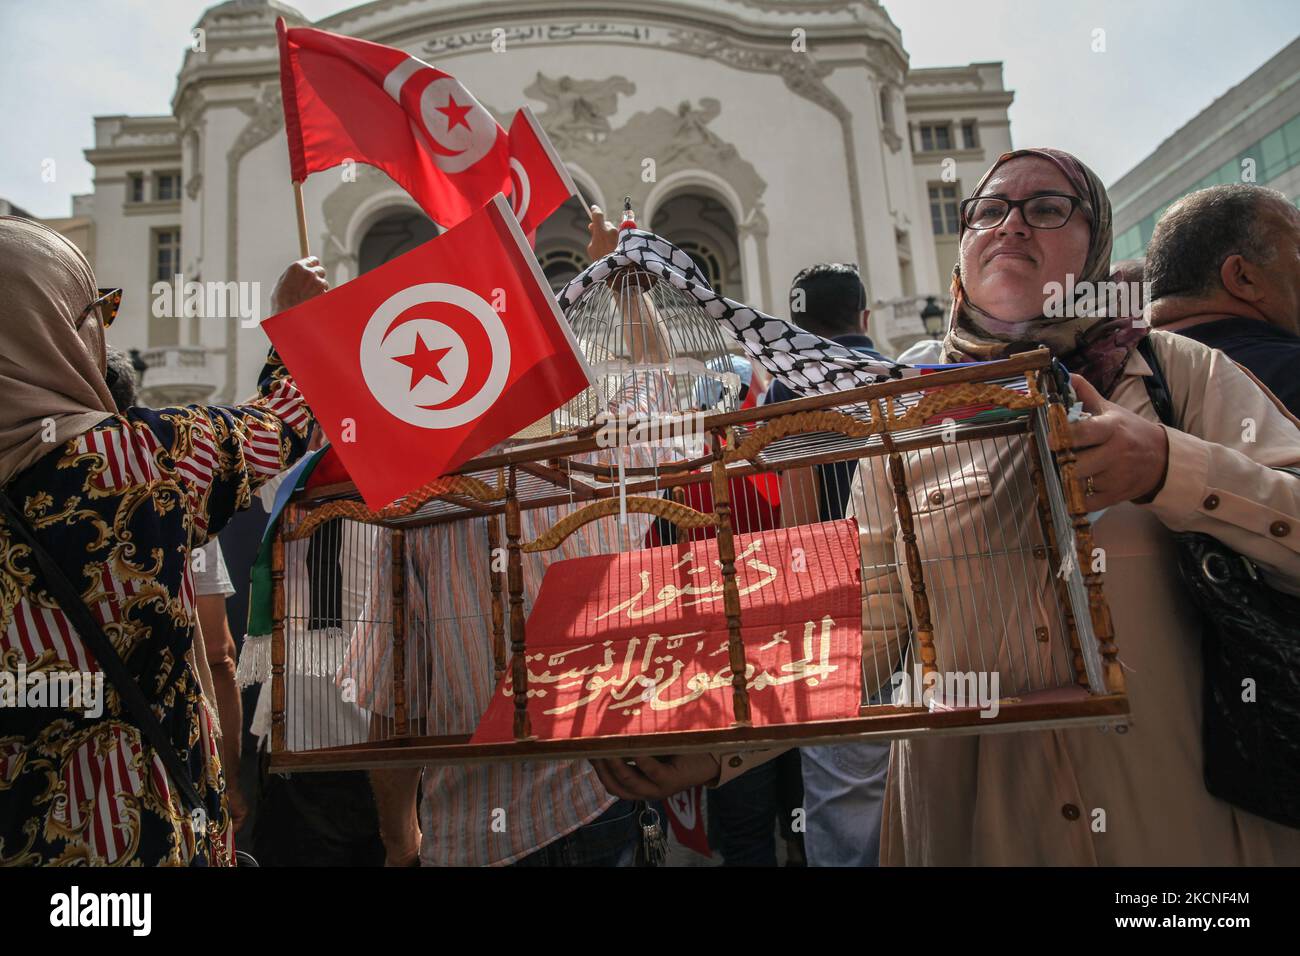 Una manifestante sostiene una jaula con un cartel en el interior que dice en árabe, Constitución de la República de Túnez, durante una manifestación realizada en la avenida Habib Bourguiba en Túnez, Túnez, el 26 de septiembre de 2021, para protestar por lo que miles de manifestantes llamaron un golpe de estado, Refiriéndose a las nuevas medidas excepcionales decretadas por el Presidente de Túnez, Kais Saied, y publicadas en el Diario Oficial. Unos días antes, Kais Saied anunció la continuación de la congelación del Parlamento y la promulgación de medidas excepcionales para el ejercicio del poder legislativo y del poder ejecutivo Foto de stock